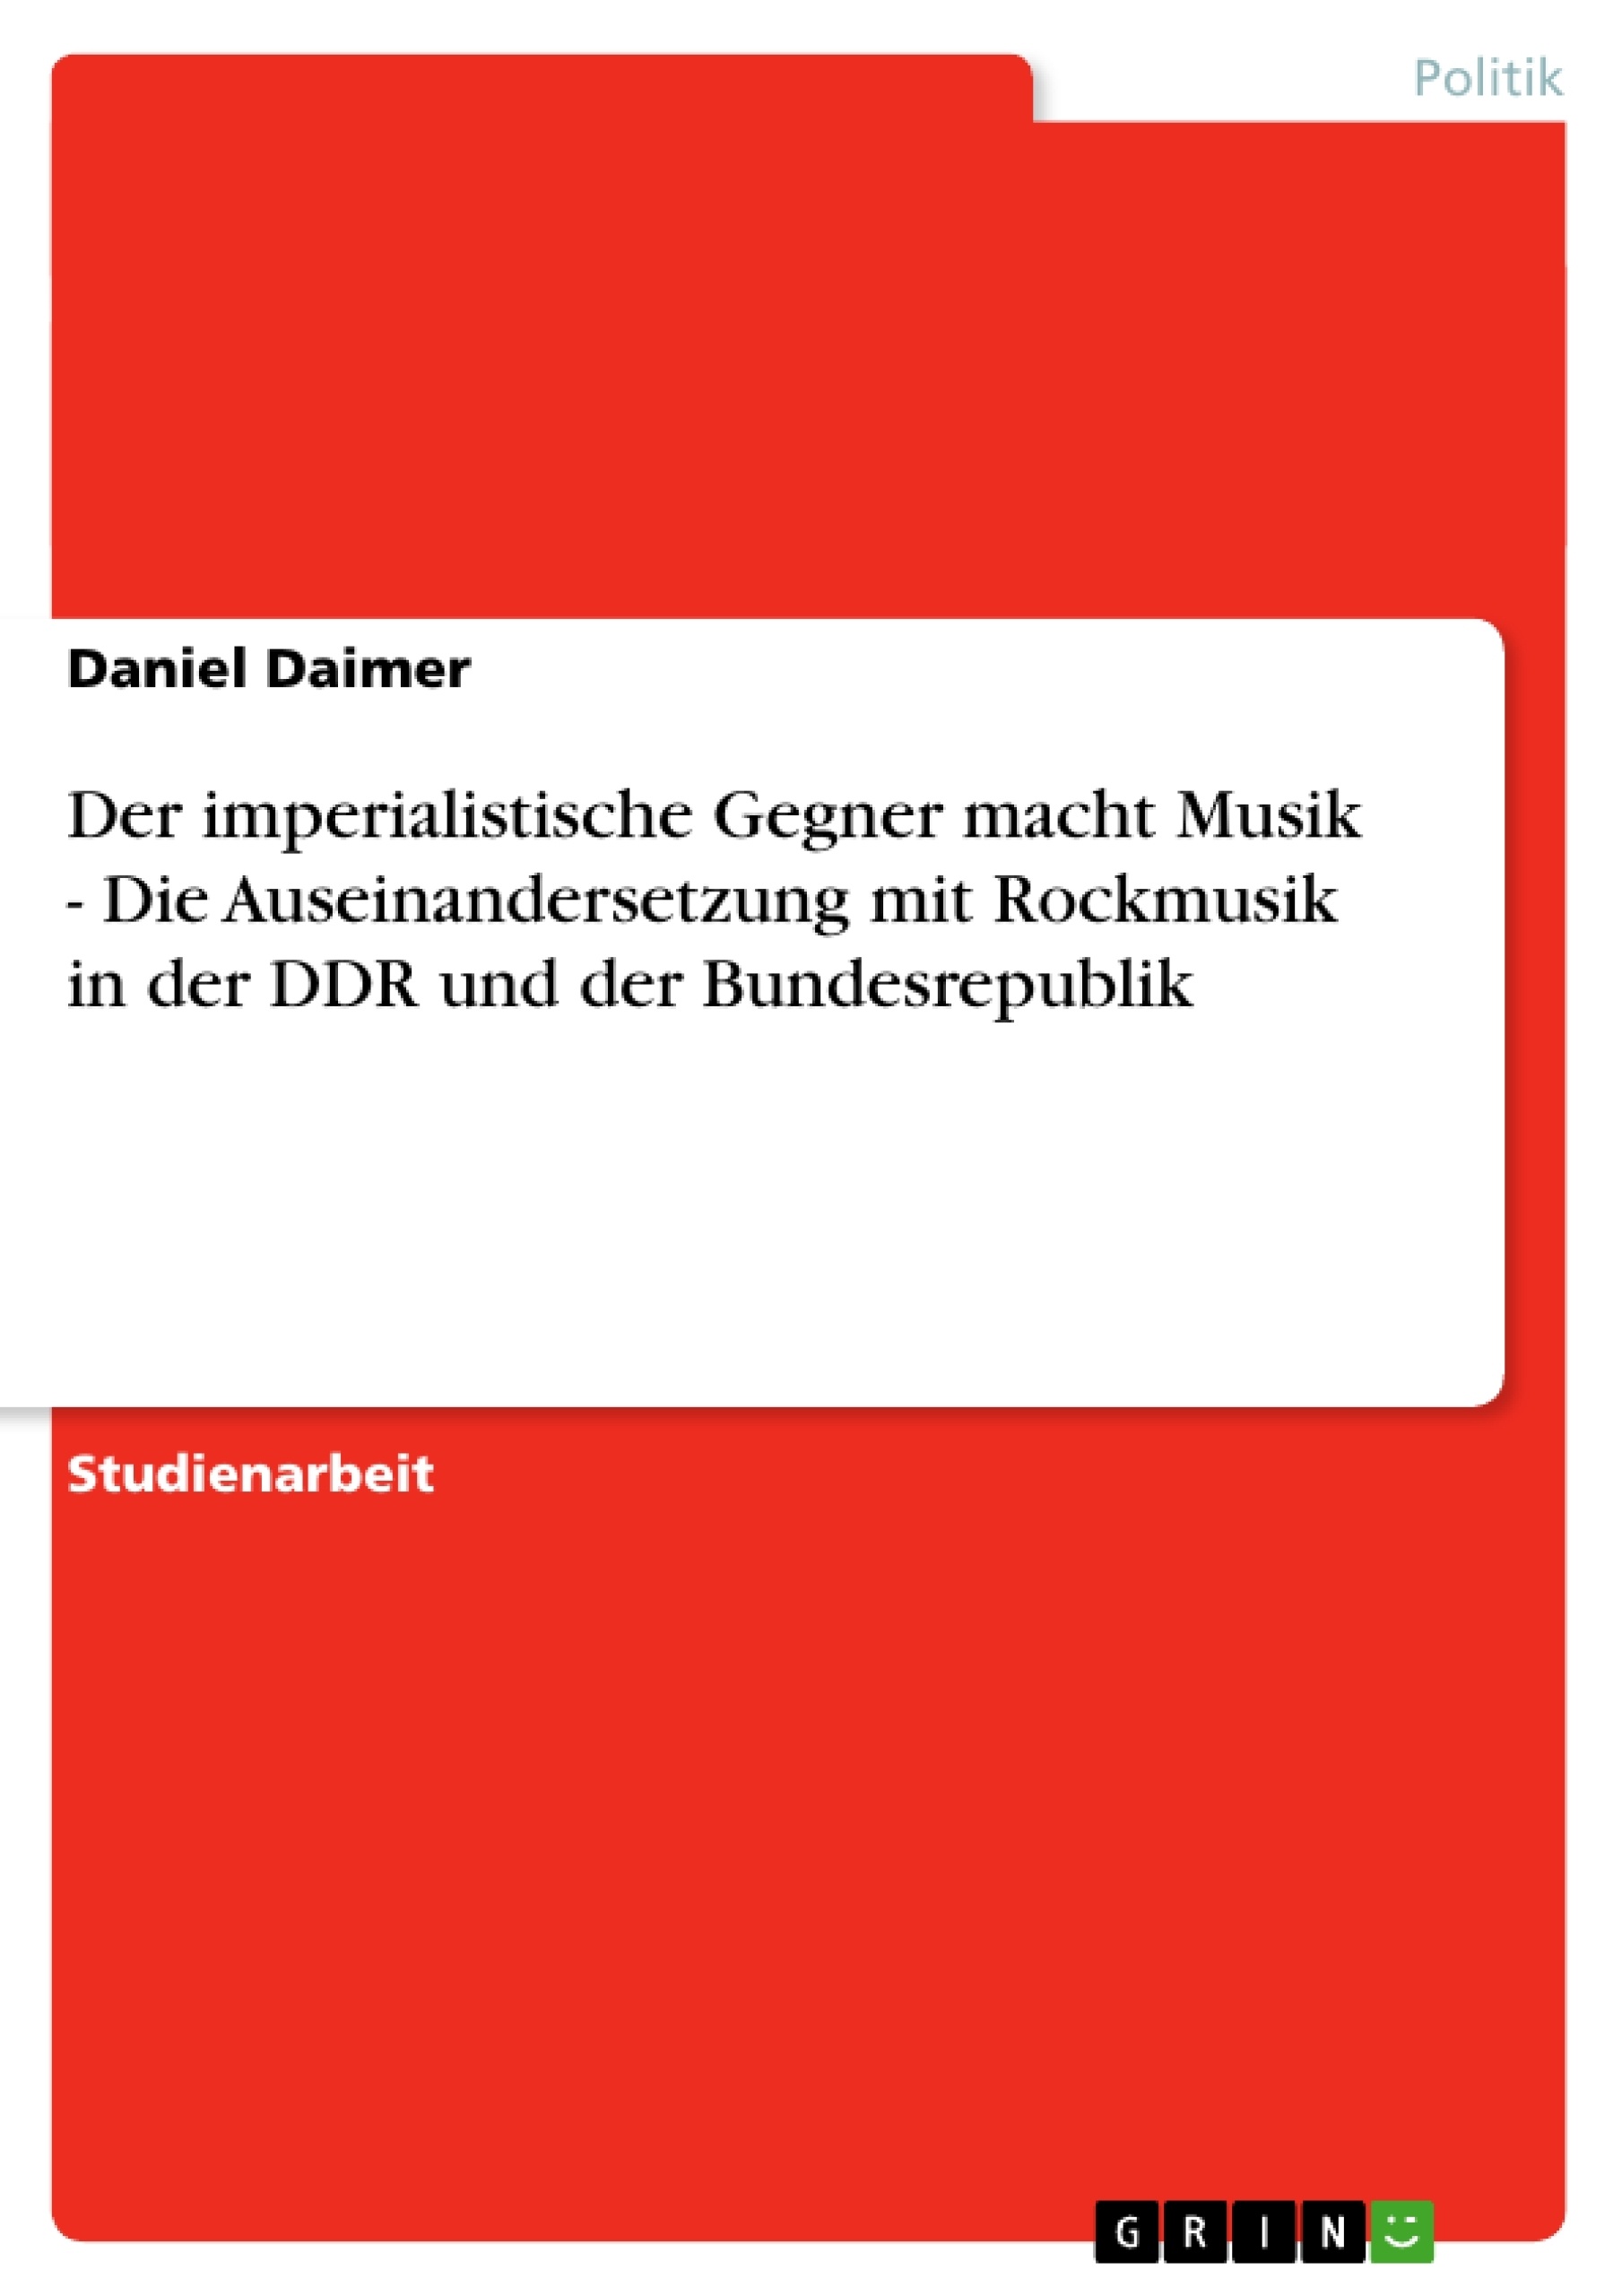 Título: Der imperialistische Gegner macht Musik - Die Auseinandersetzung mit Rockmusik in der DDR und der Bundesrepublik